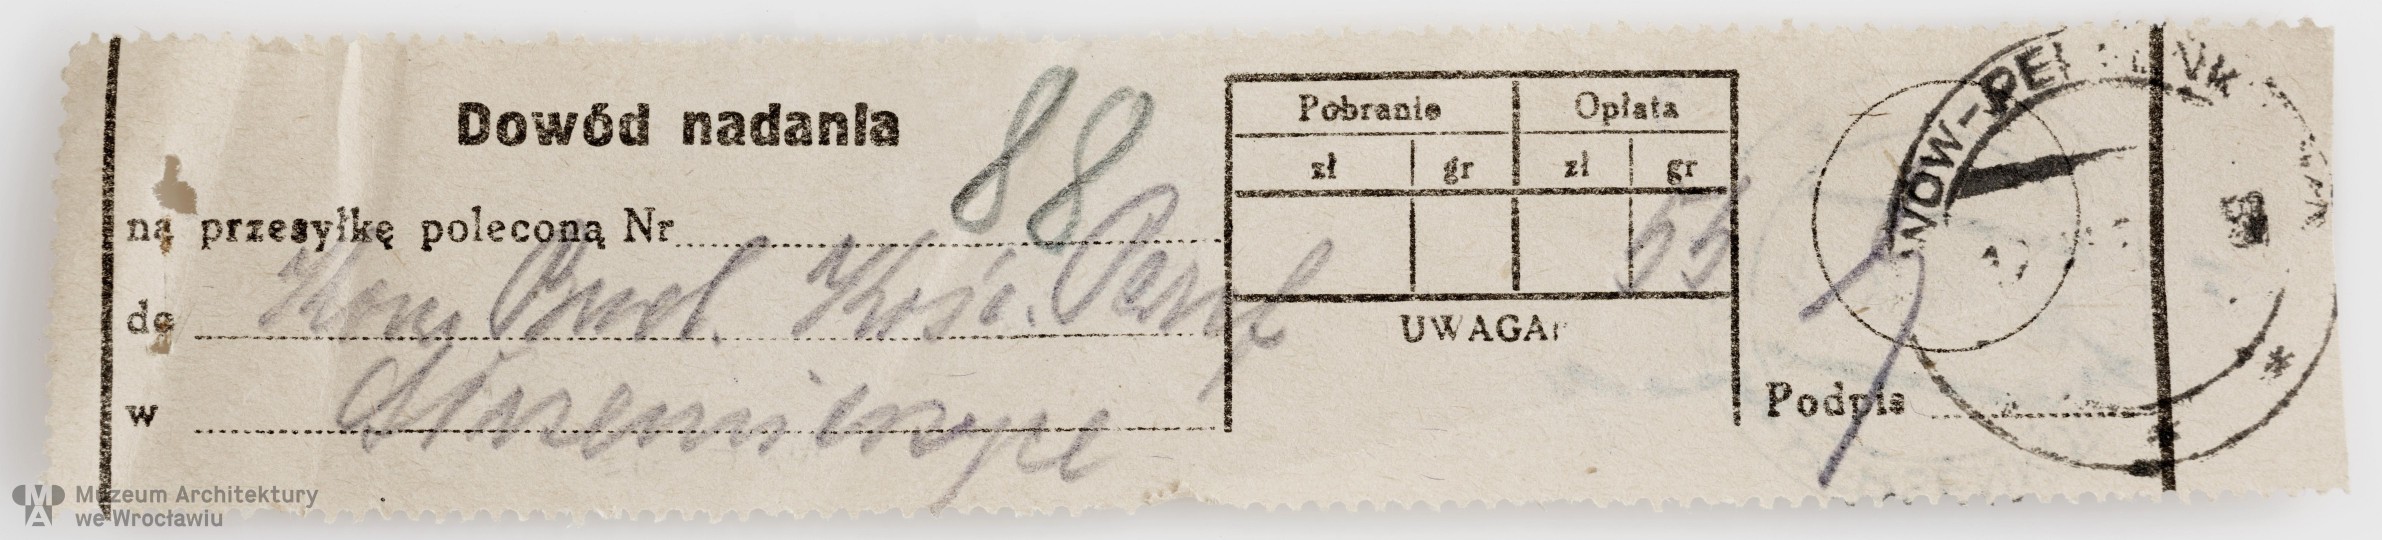 Frydecki Andrzej, Kościół parafialny w Niemcach. Korespondencja, 1936.11.12